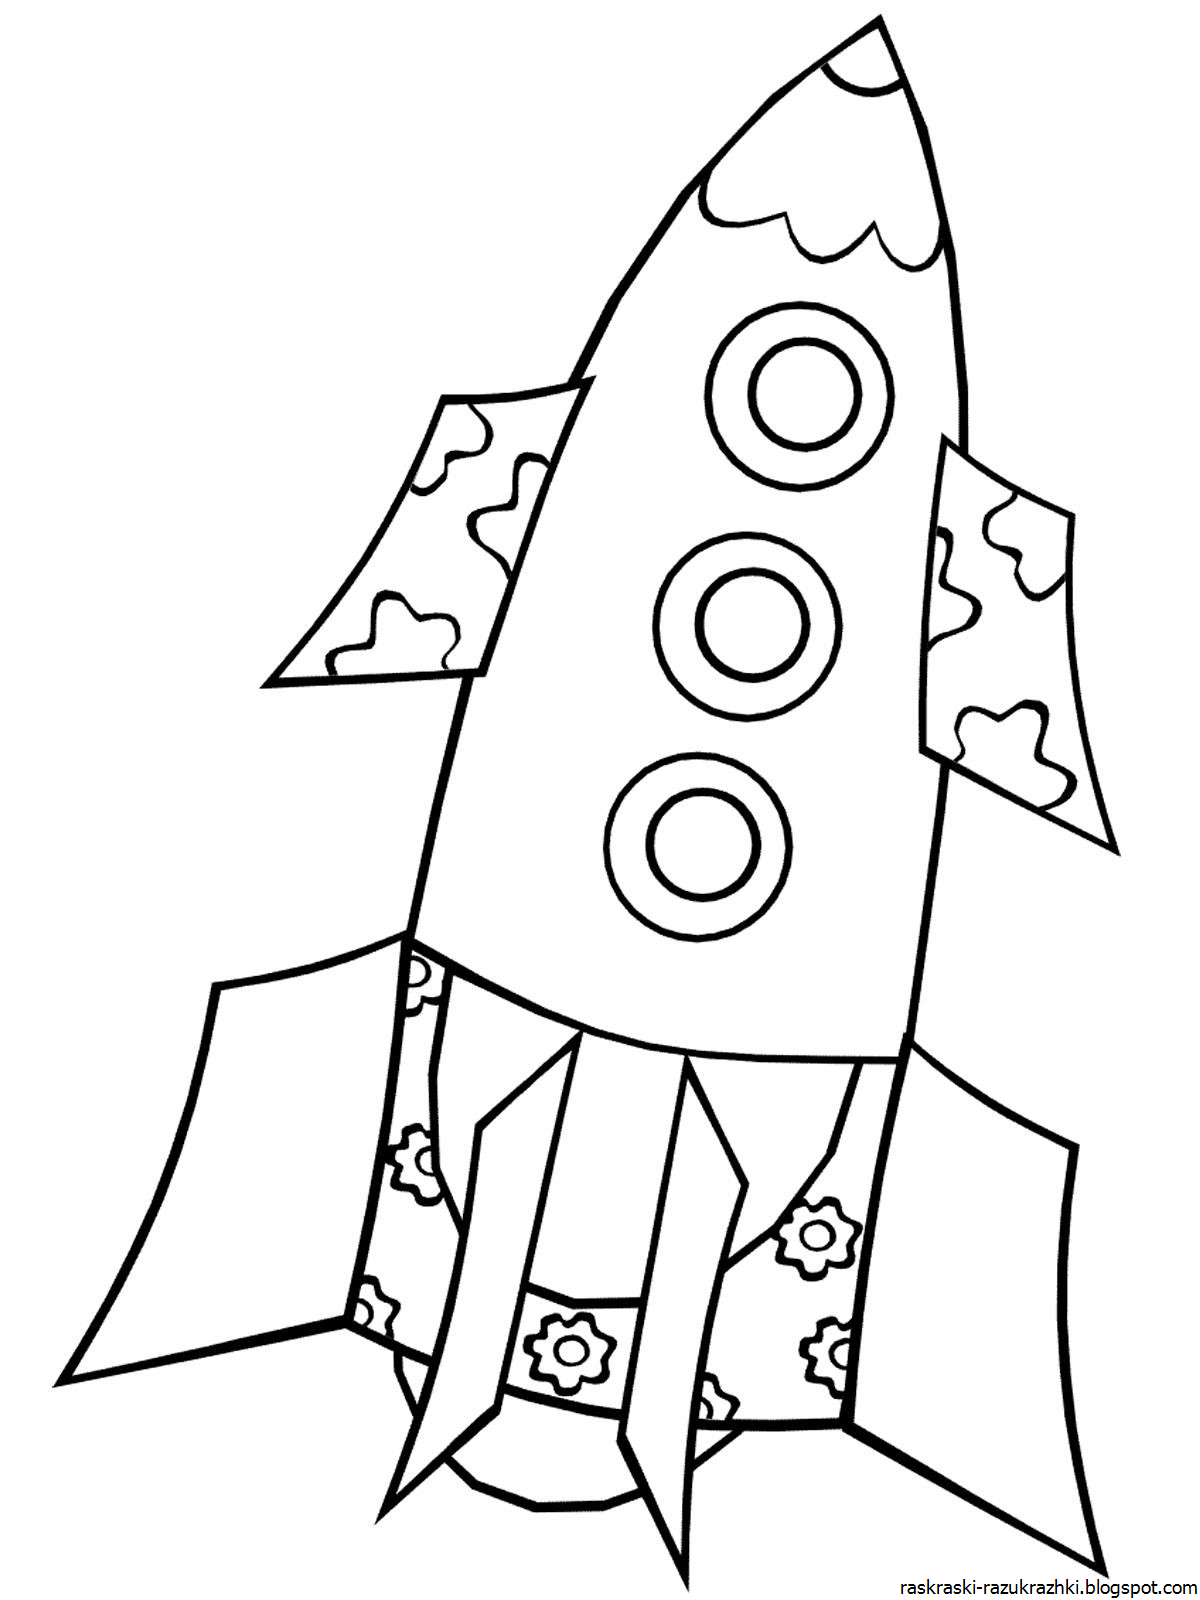 Ракета раскраска. Космический корабль раскраска для детей. Космическая ракета раскраска. Ракета рисунок для детей. Шаблон ракеты для вырезания из бумаги